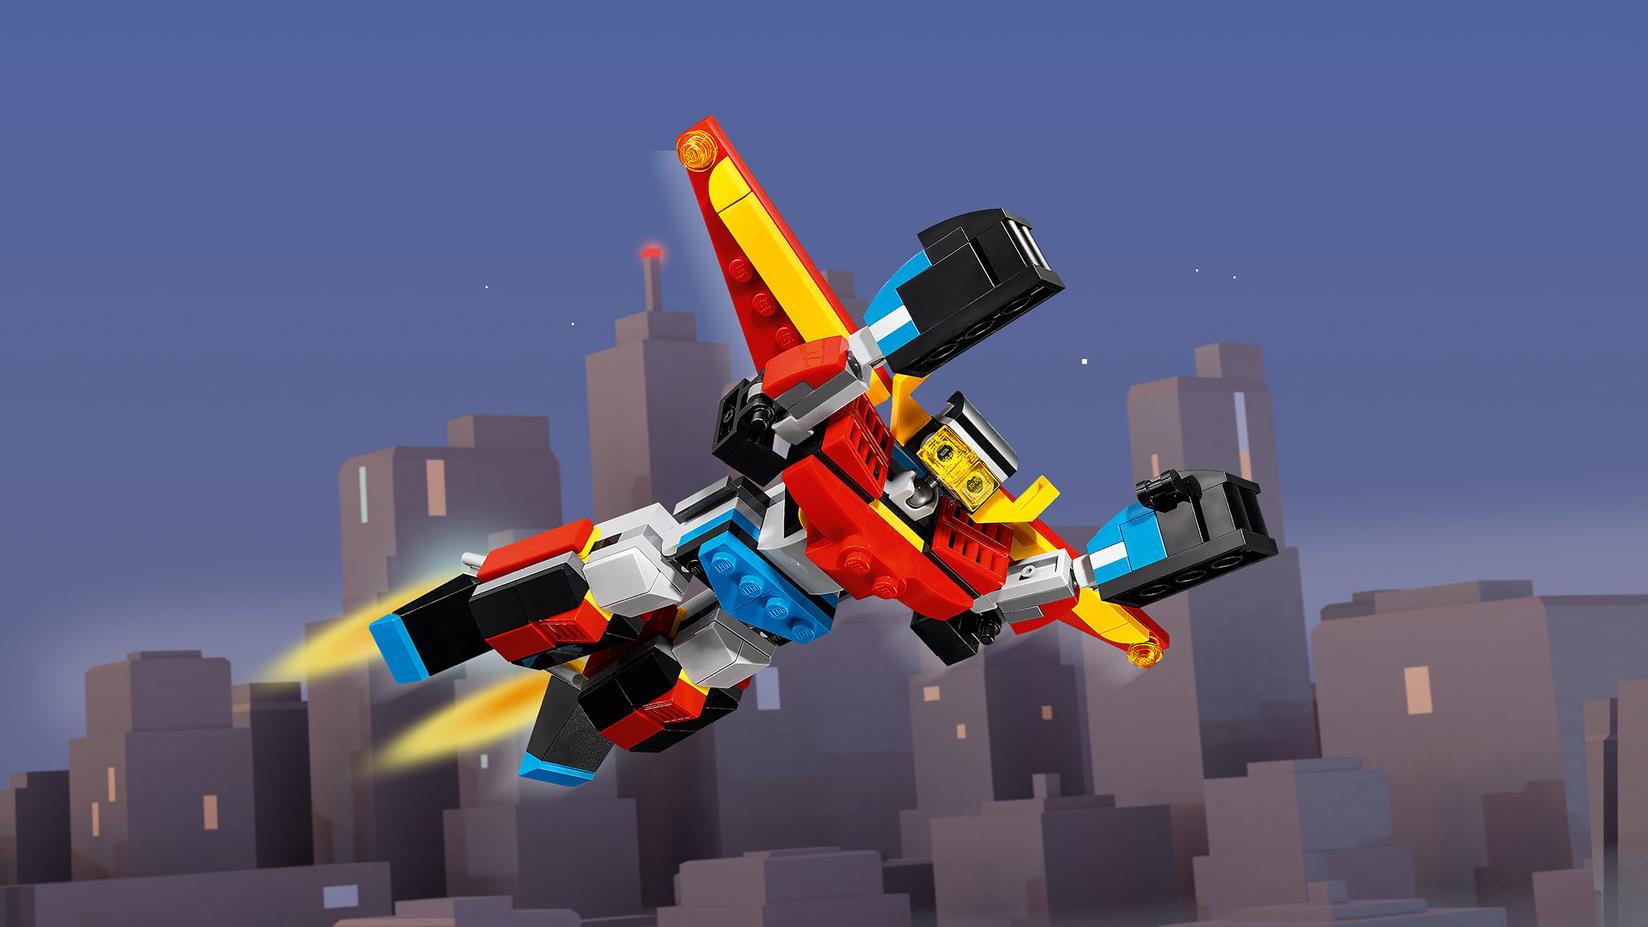 Selected image for LEGO Kocke Superrobot 31124